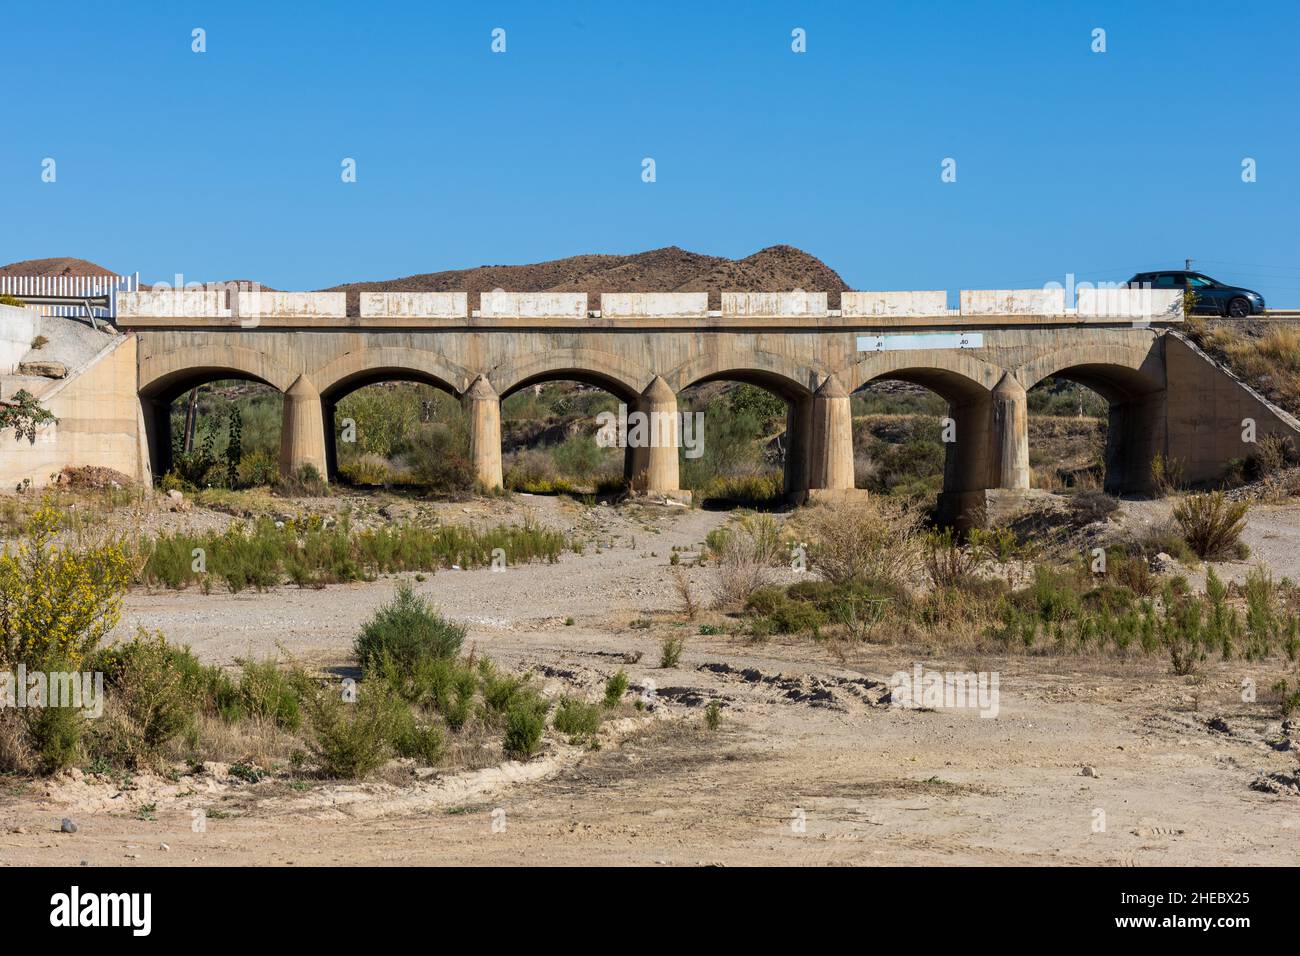 Road Bridge Over the Rambla, Albox, Almeria province, Andalucía, Spain Stock Photo